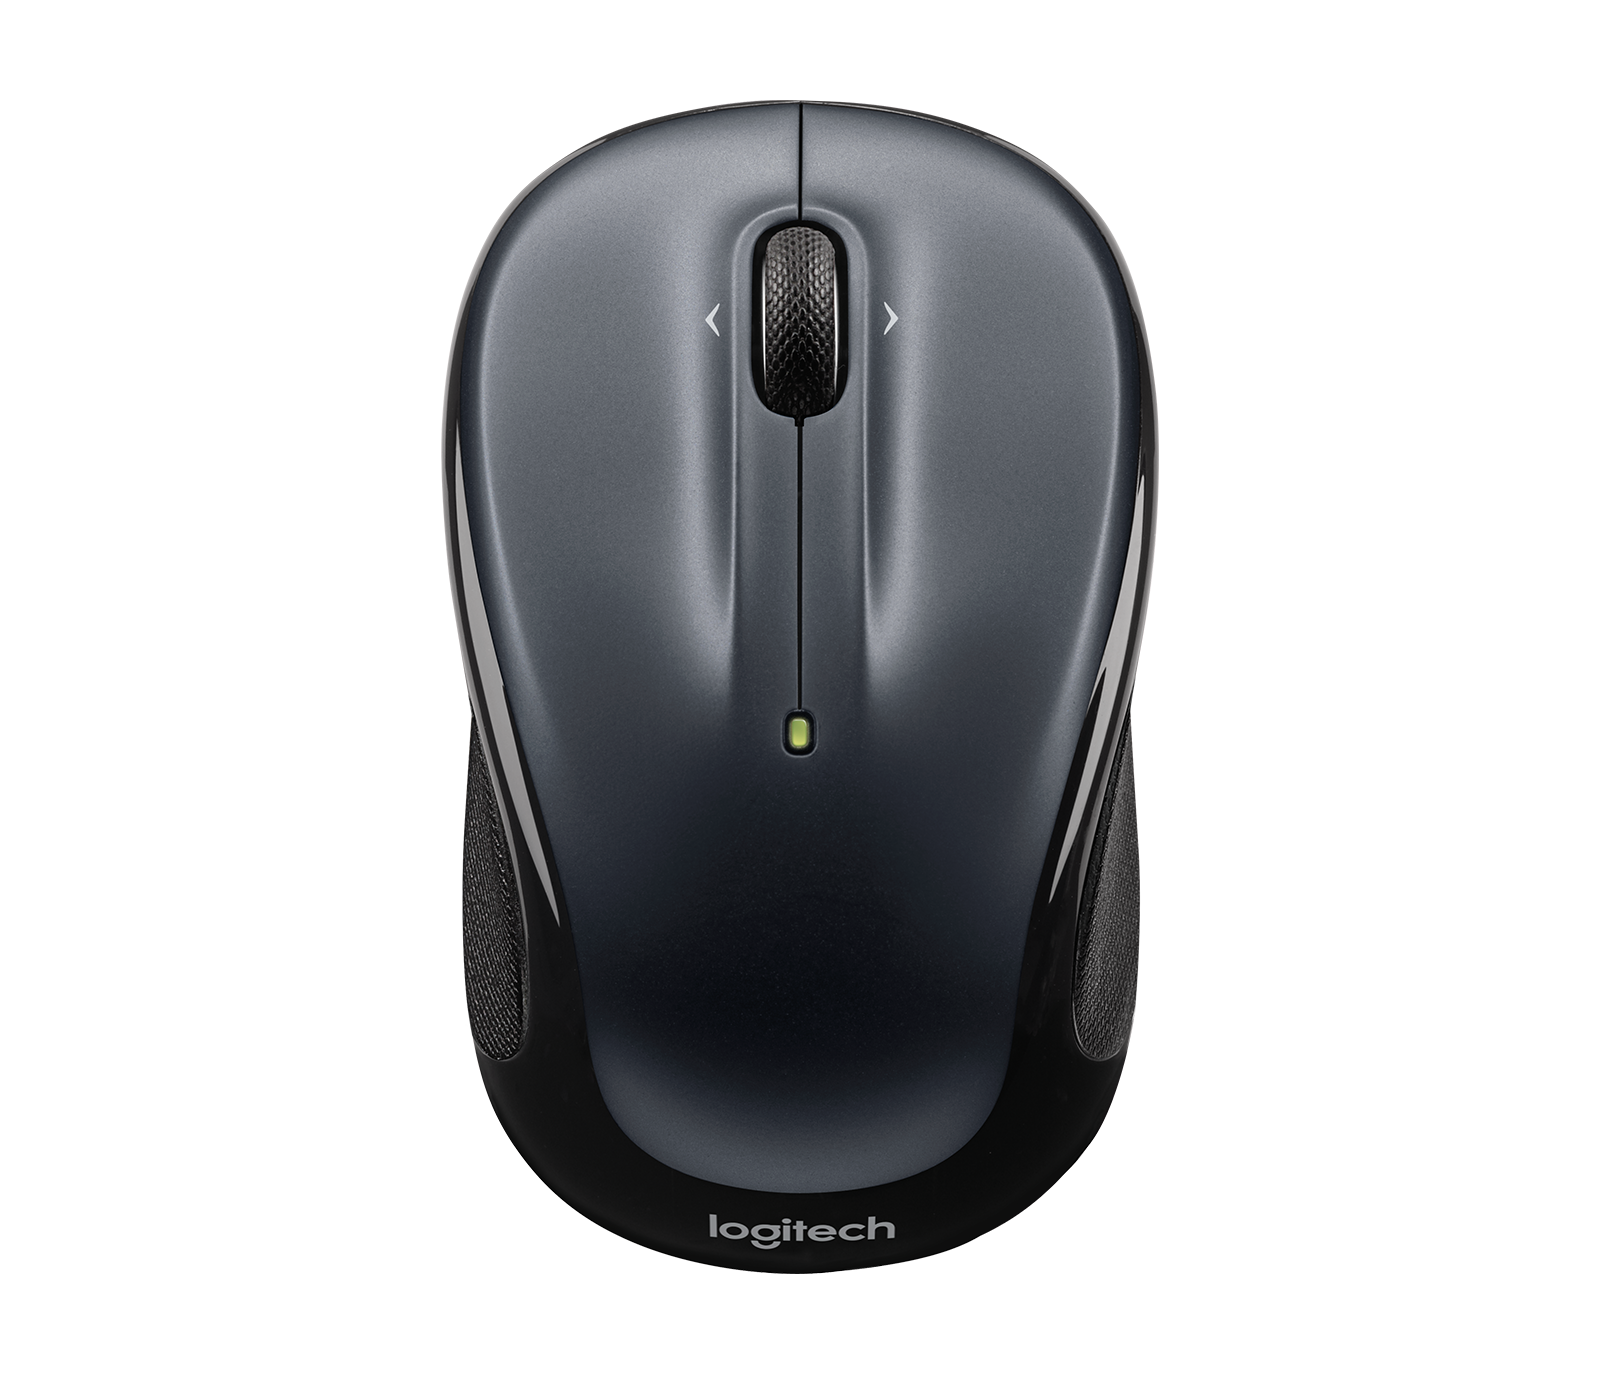 Grigio scuro 5 Mouse LOGITECH ® wireless mouse m325 tasti con rotellina di scorrimento USB 